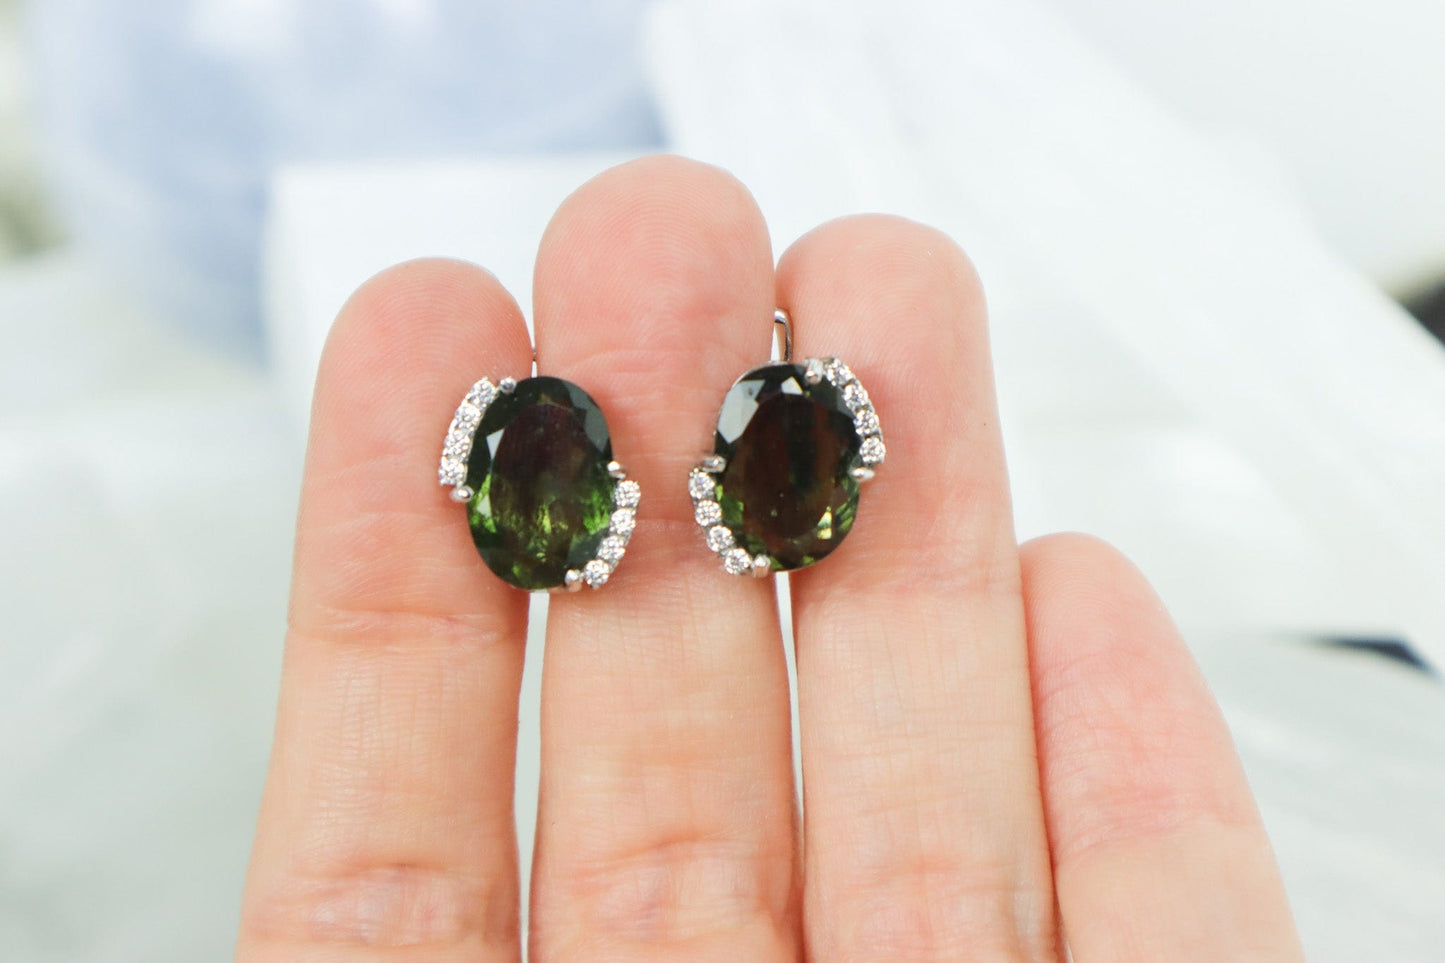 Moldavite Earrings 'Halo' - The Stone of Transformation Earrings Cubic Zirconia Tali & Loz